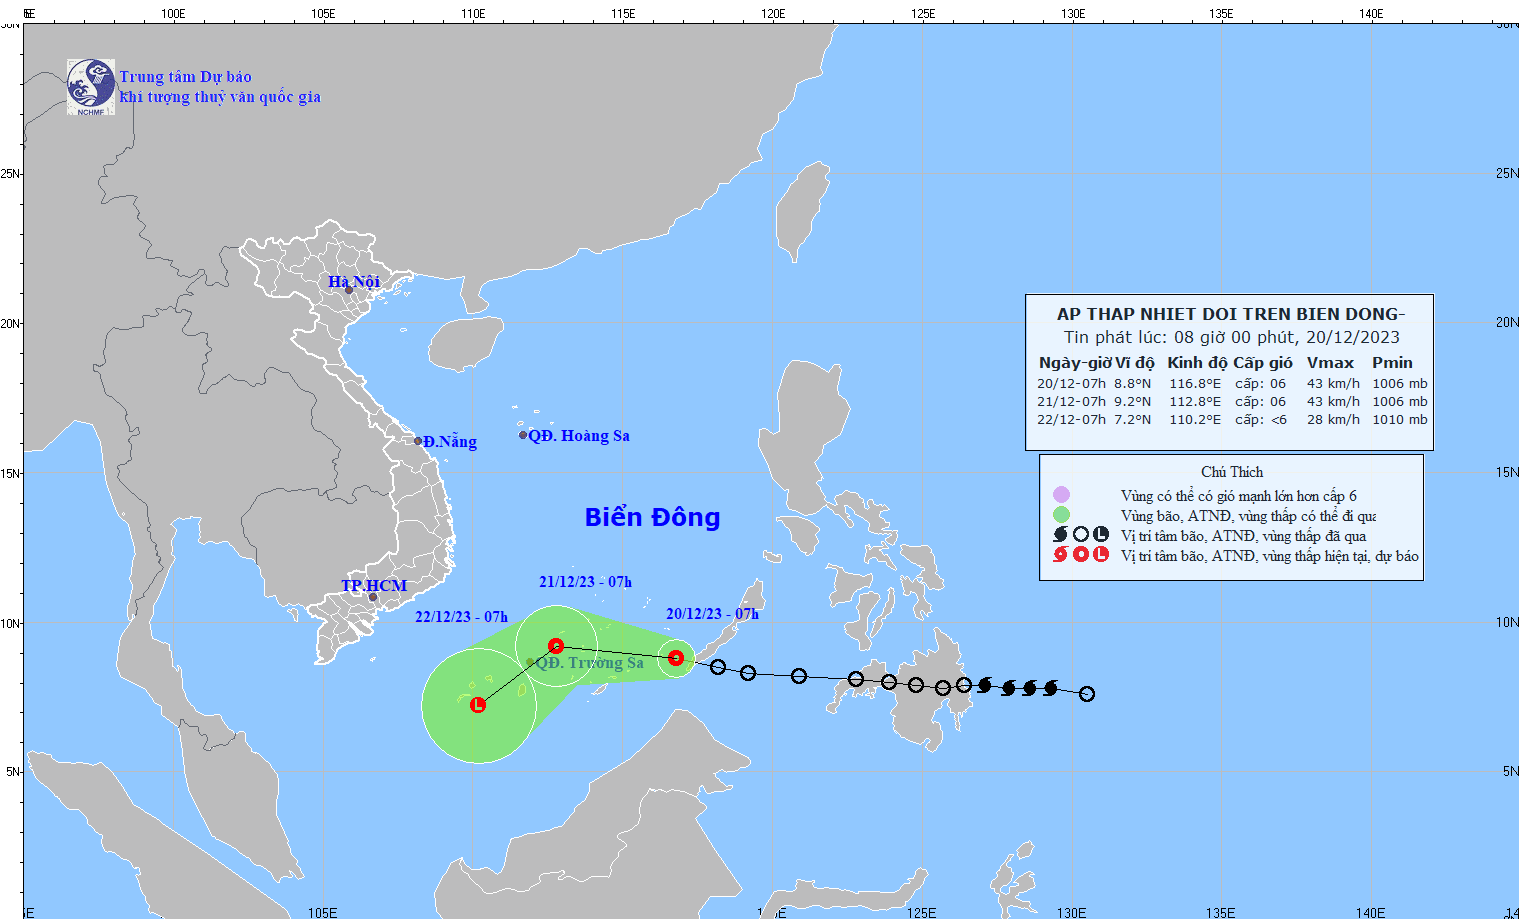 Dự báo áp thấp nhiệt đới trên Biển Đông: Vùng biển quần đảo Trường Sa có gió mạnh cấp 6, giật cấp 8